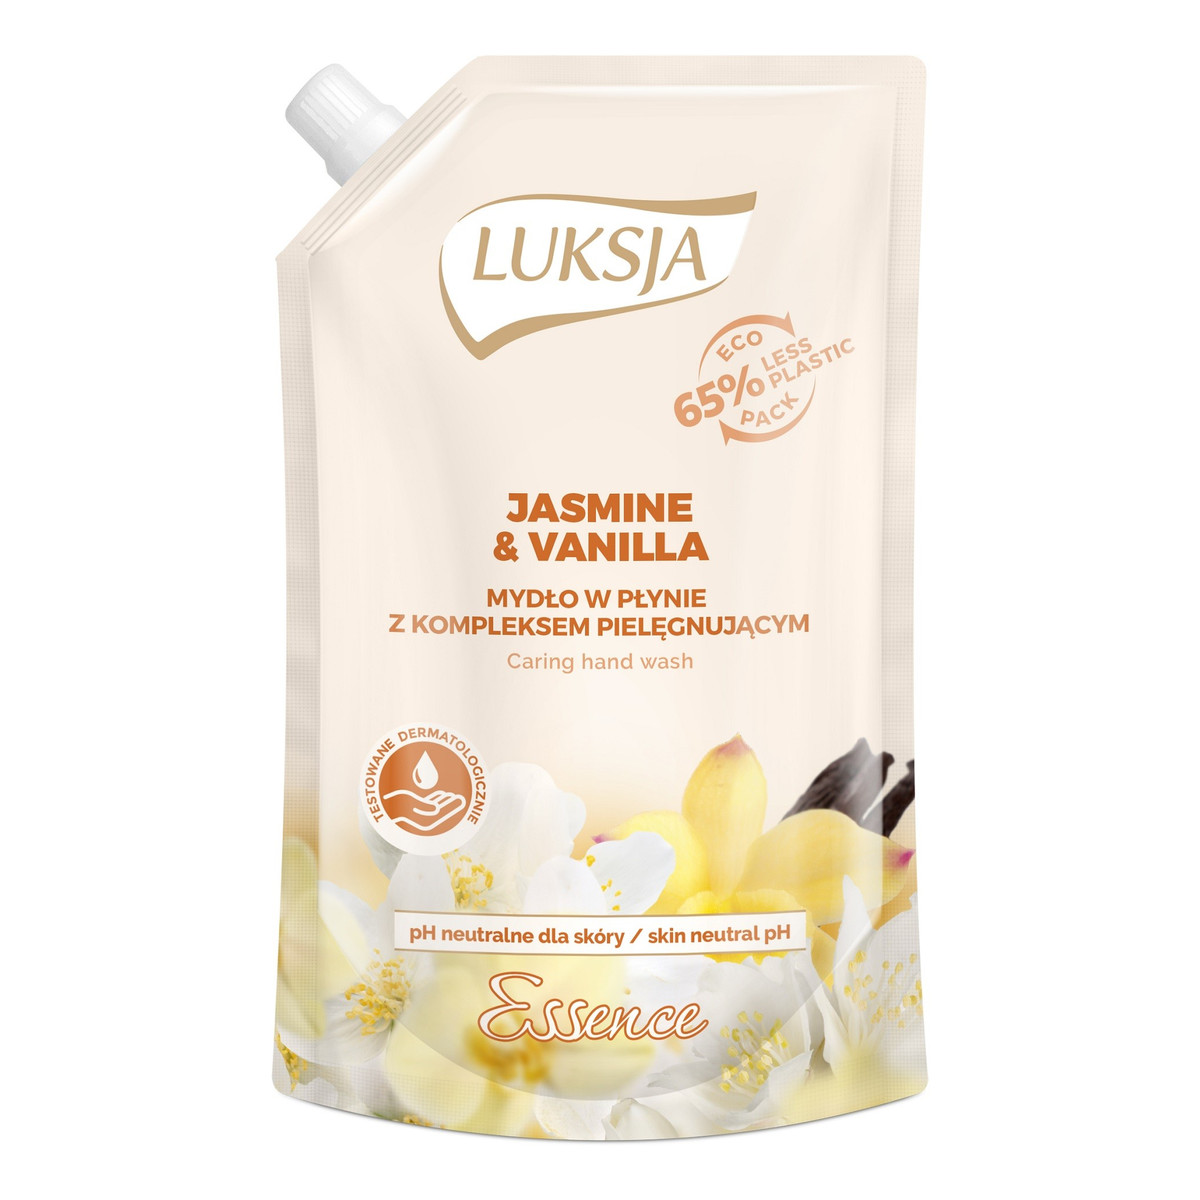 Luksja Essence Jasmine & Vanilla Mydło w płynie opakowanie uzupełniające 400ml